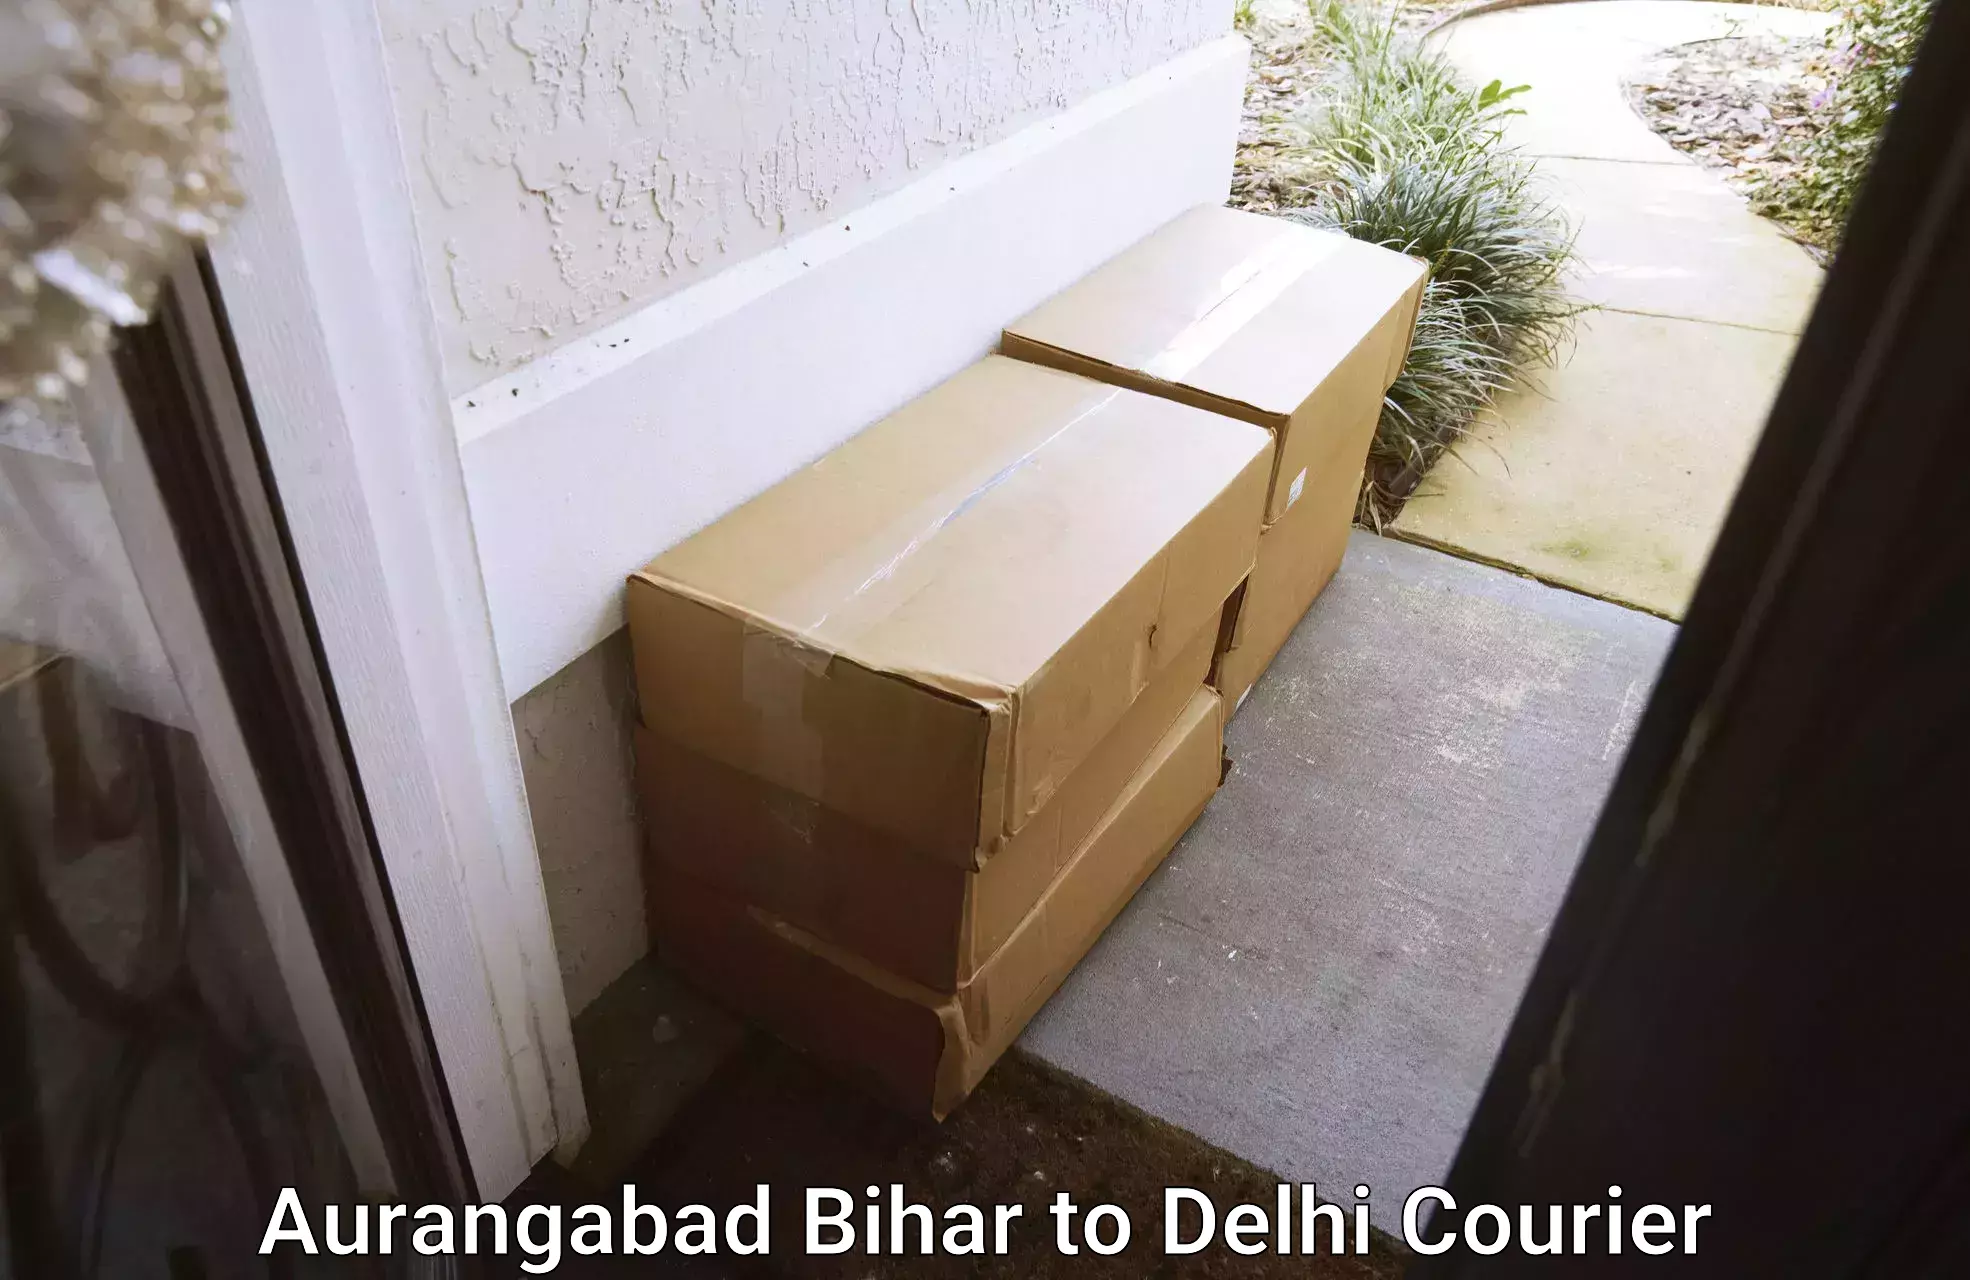 Professional movers Aurangabad Bihar to IIT Delhi